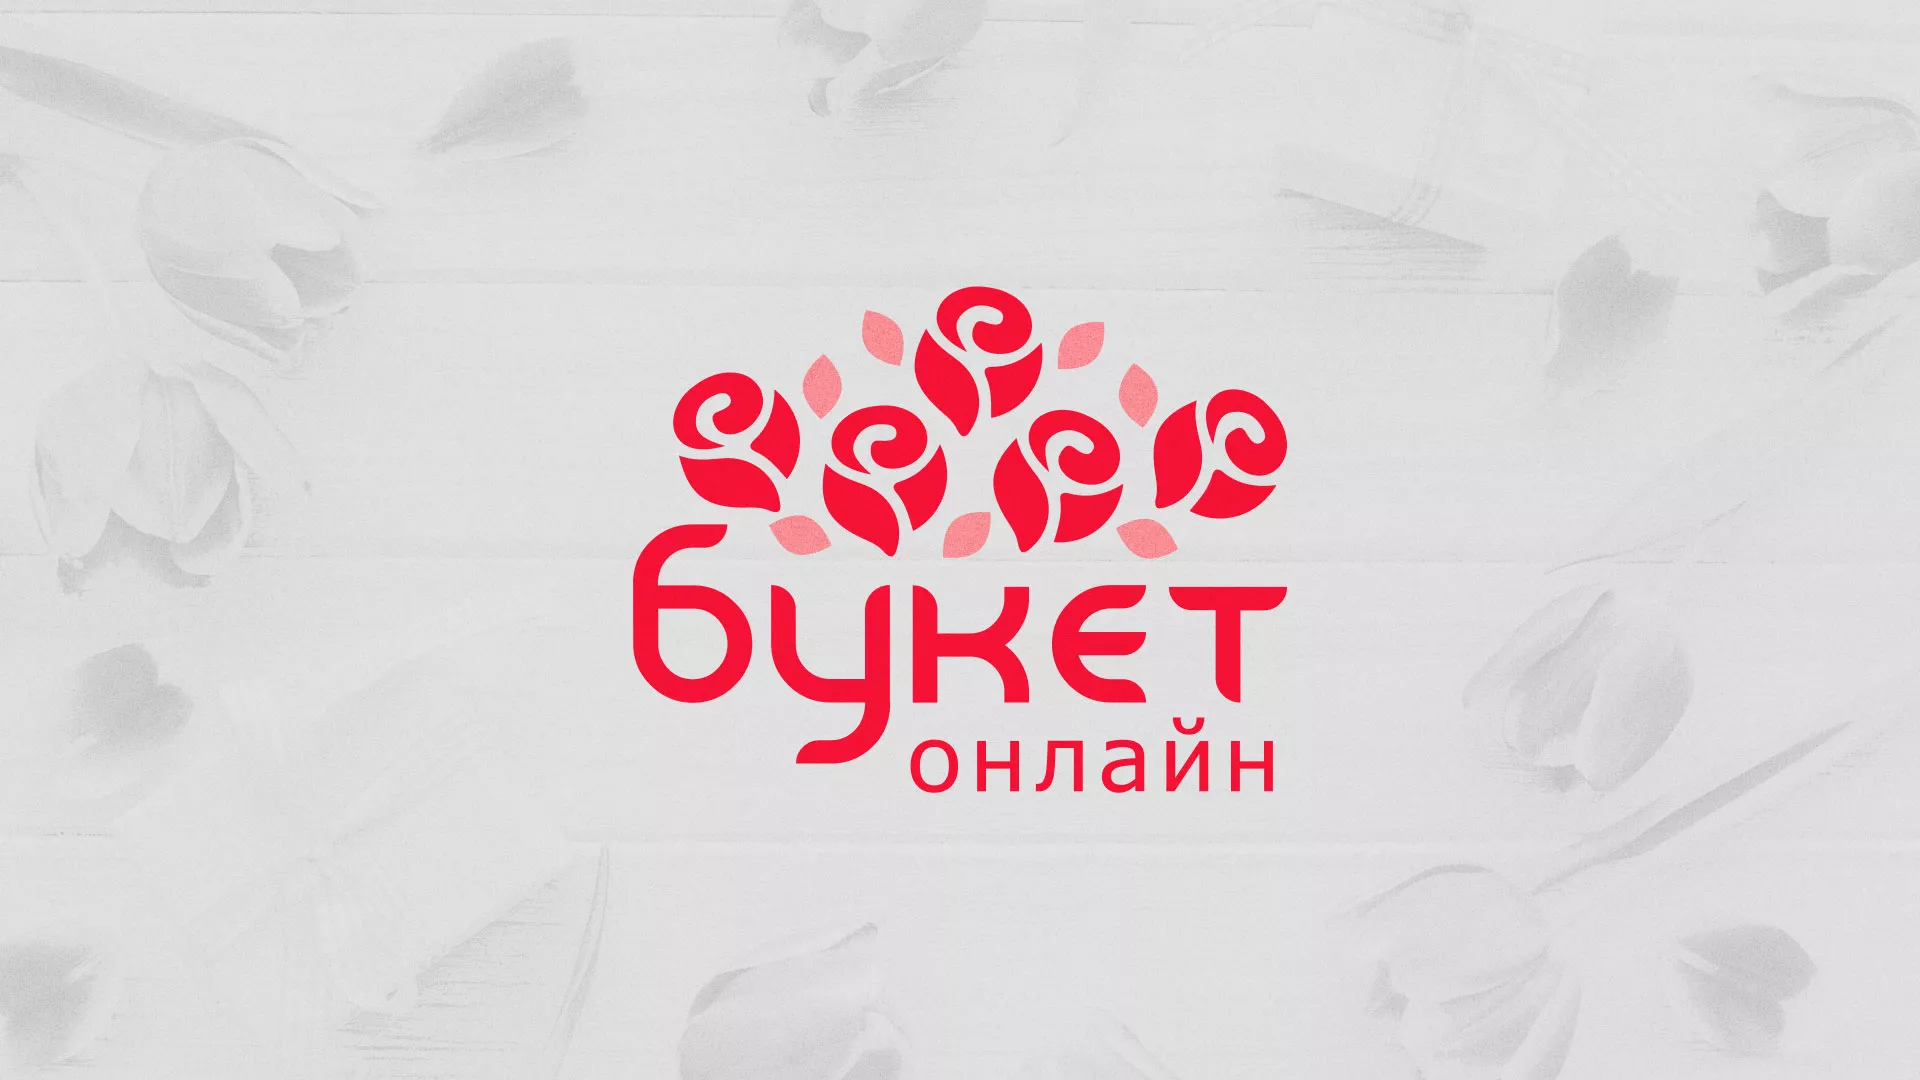 Создание интернет-магазина «Букет-онлайн» по цветам в Сатке